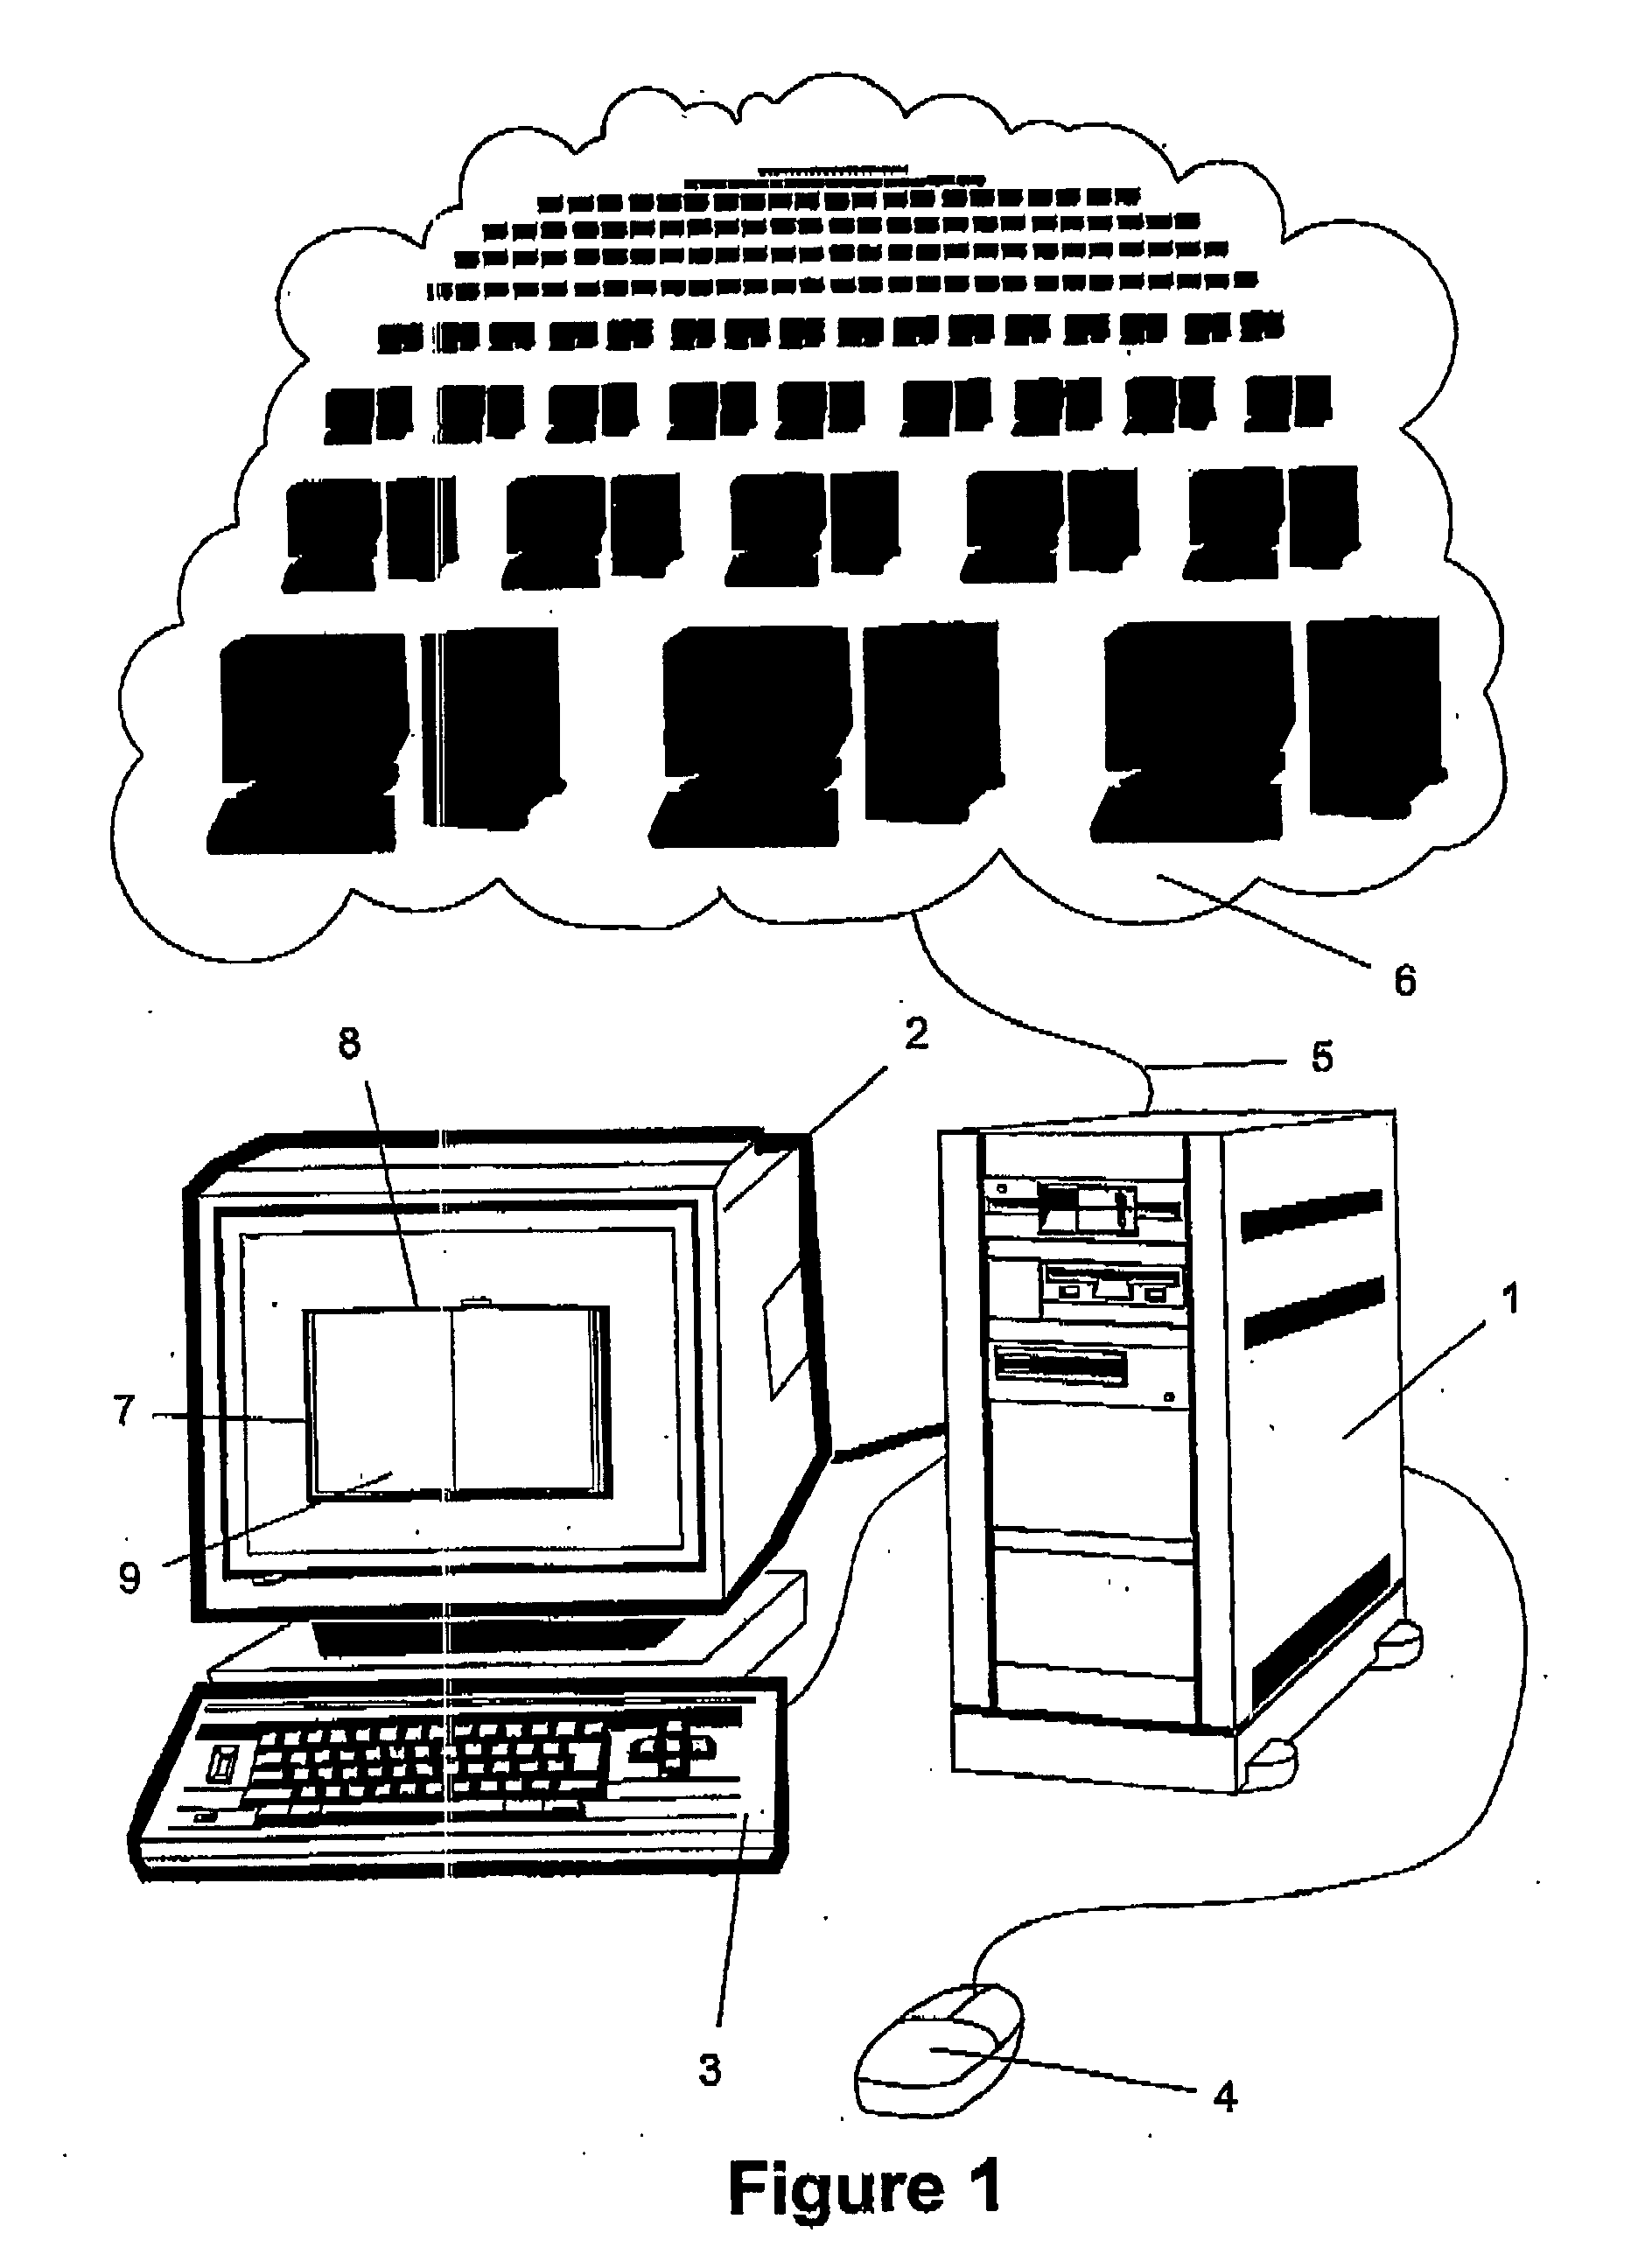 Computer publication